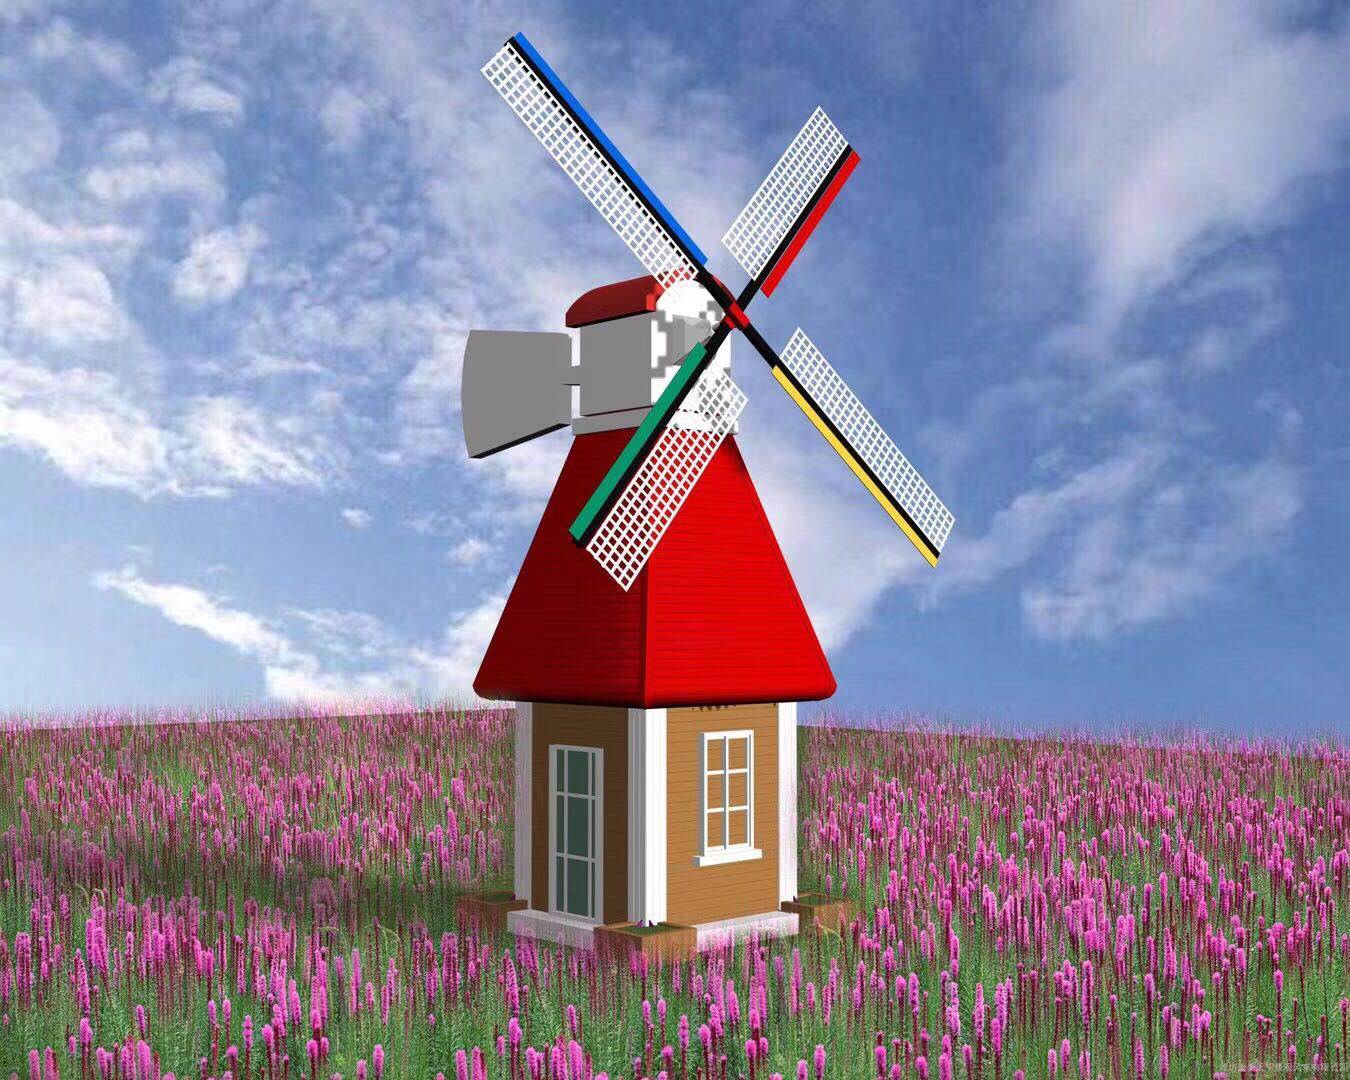 　　风车不只是一道风景，更是一种精神象征，一种图腾。正如欧洲流传的一句话：上帝创造了人，荷兰风车创造了陆地。风车象征着荷兰的民族文化，象征着人们对天空的热爱，象征着童话般的幸福。西班牙随处可见的就是风车，虽然如今的风车已经失去了它原有的功效，但确象征着西班牙农业的曾经。在多风的山地上建起的一座座风车，是农业兴旺的象征，随着一包包面粉的输出，光的人物，但是随着工业时代的来临，风车磨坊也渐渐衰败。一部短篇小说中，这也象征一个时代的衰落